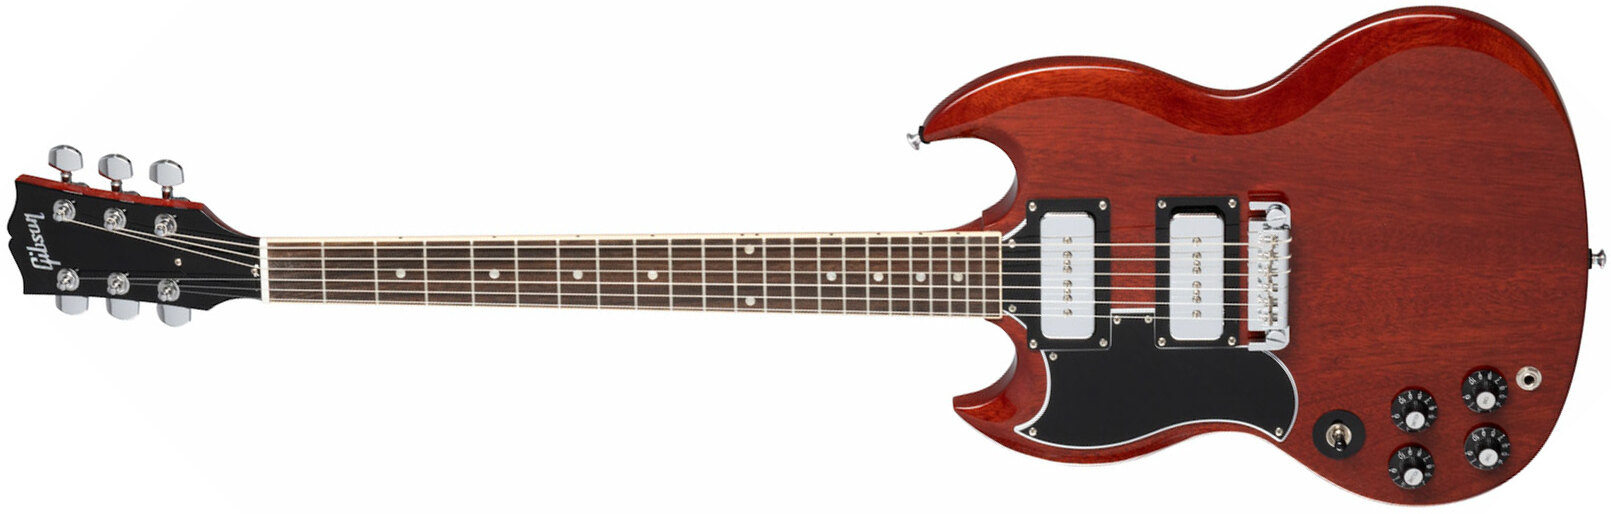 Gibson Sg Tony Iommi Special Lh Gaucher Signature 2p90 Ht Rw - Vintage Cherry - Linkshandige elektrische gitaar - Main picture